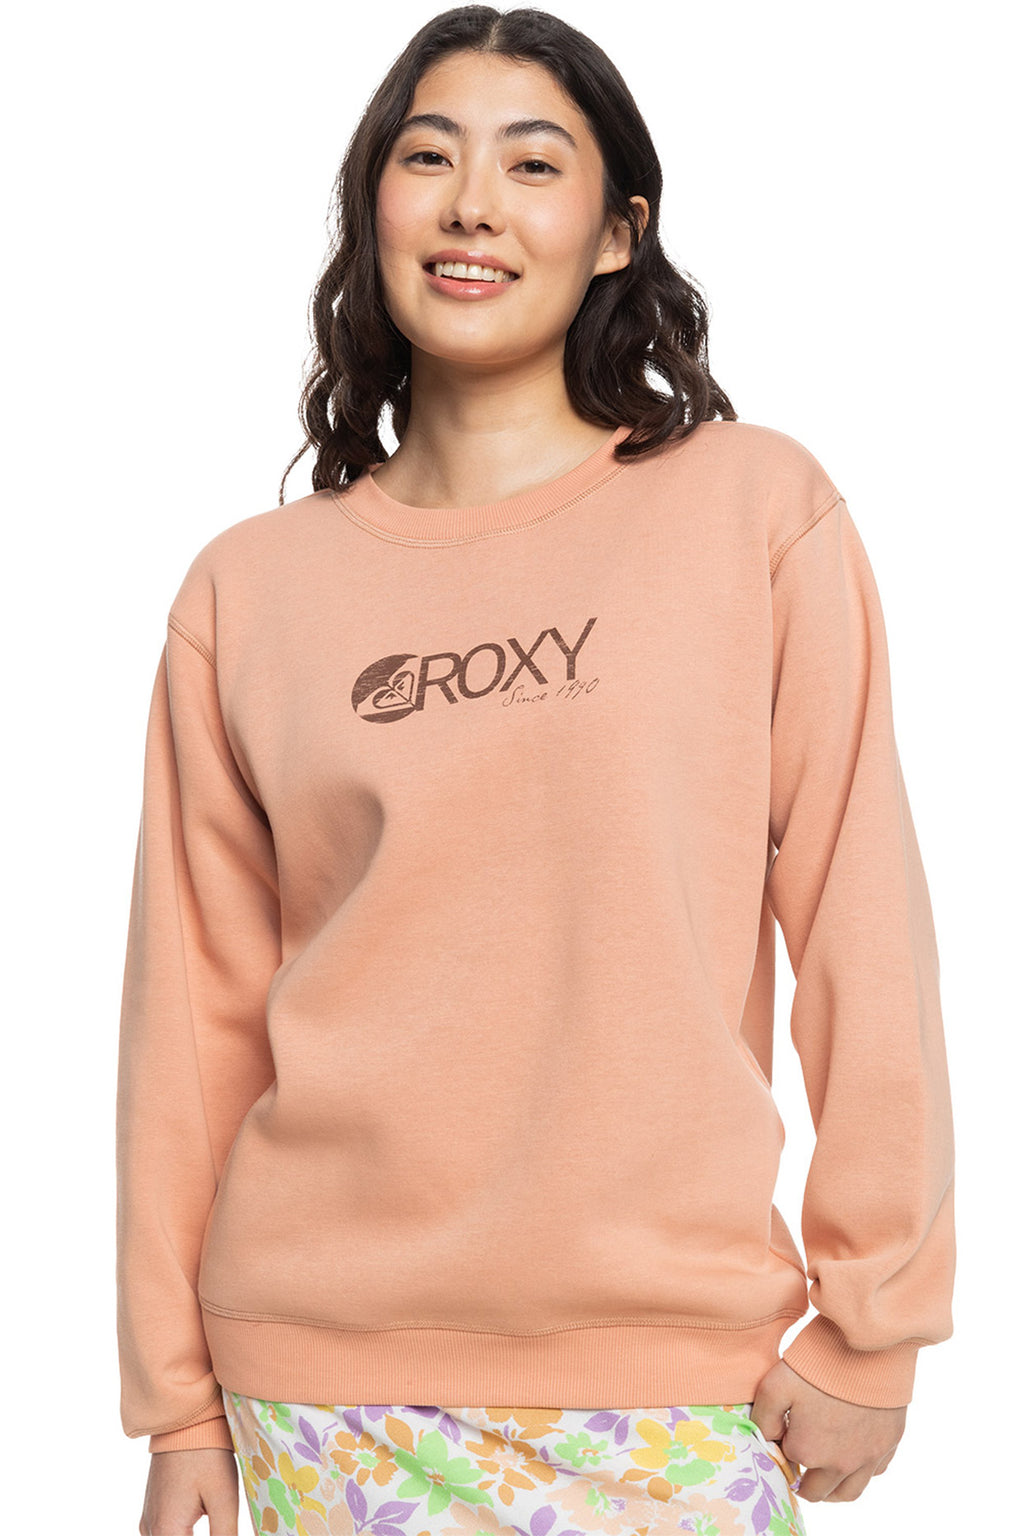 Roxy - Ladies Surf Stoked Crew Sweater